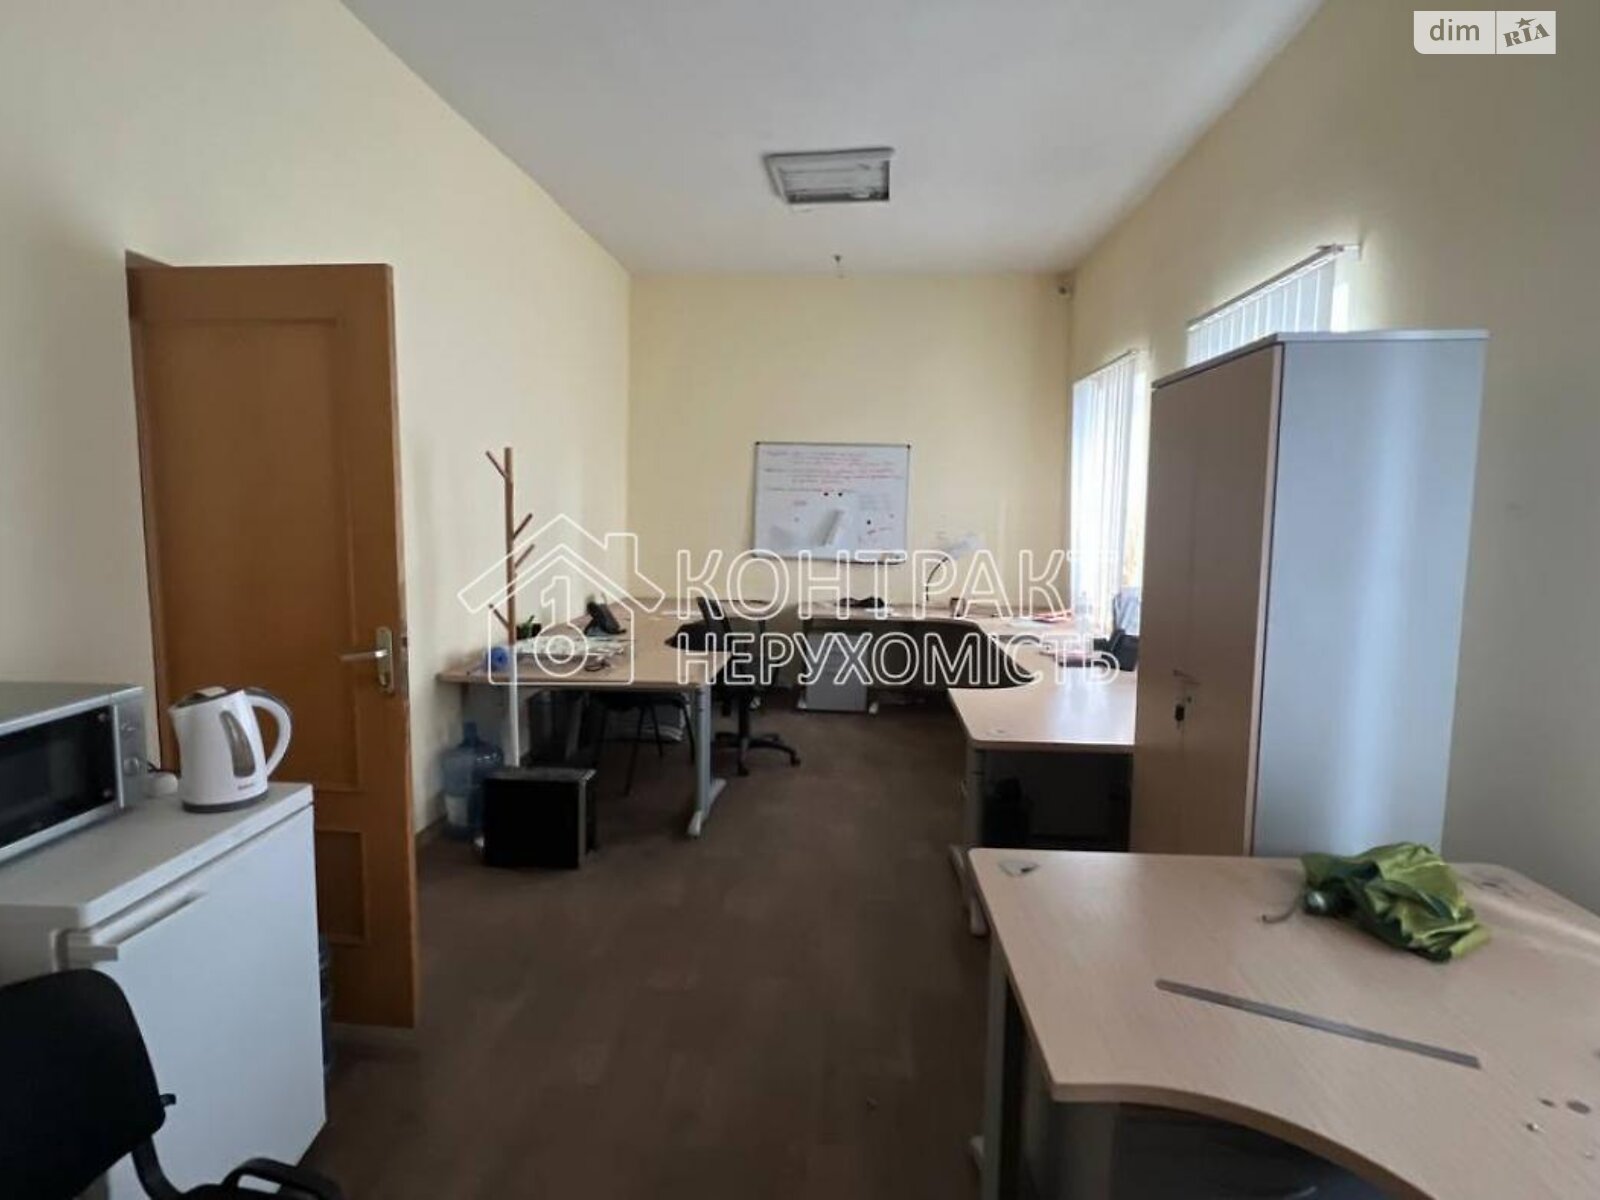 Аренда офисного помещения в Харькове, Ващенковский въезд, помещений - 1, этаж - 2 фото 1